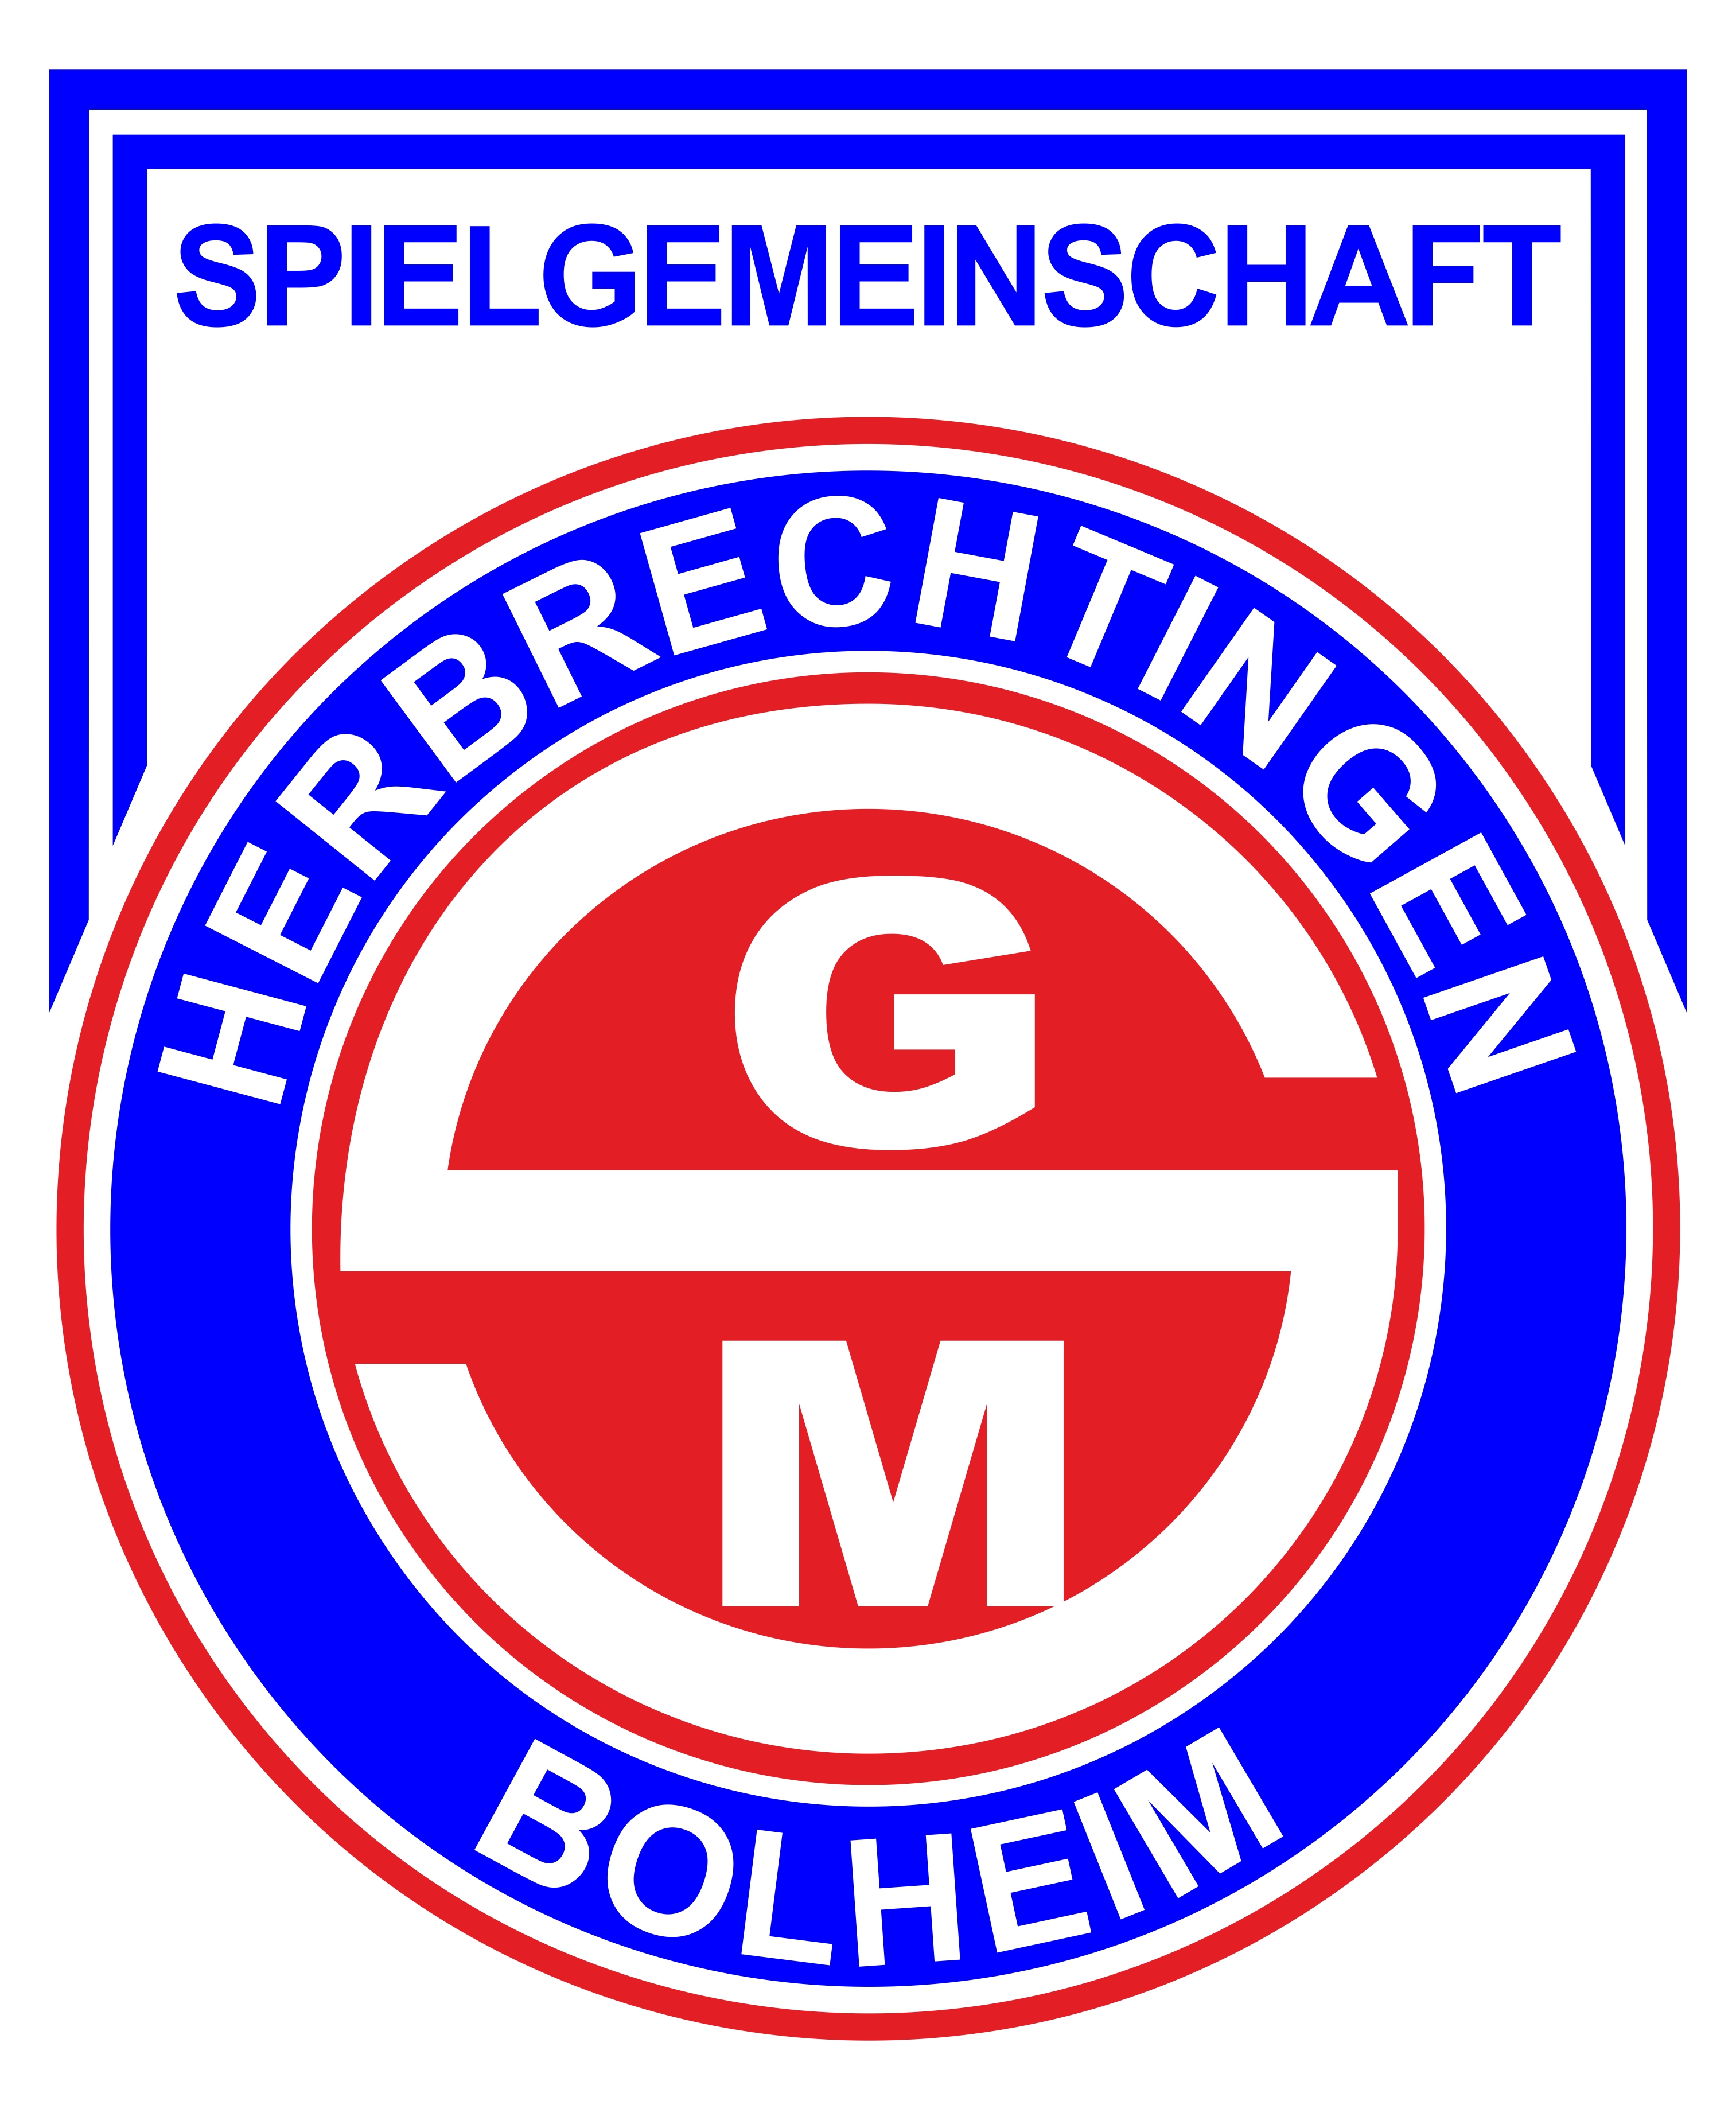 SGM Herbrechtingen Bolheim Logo